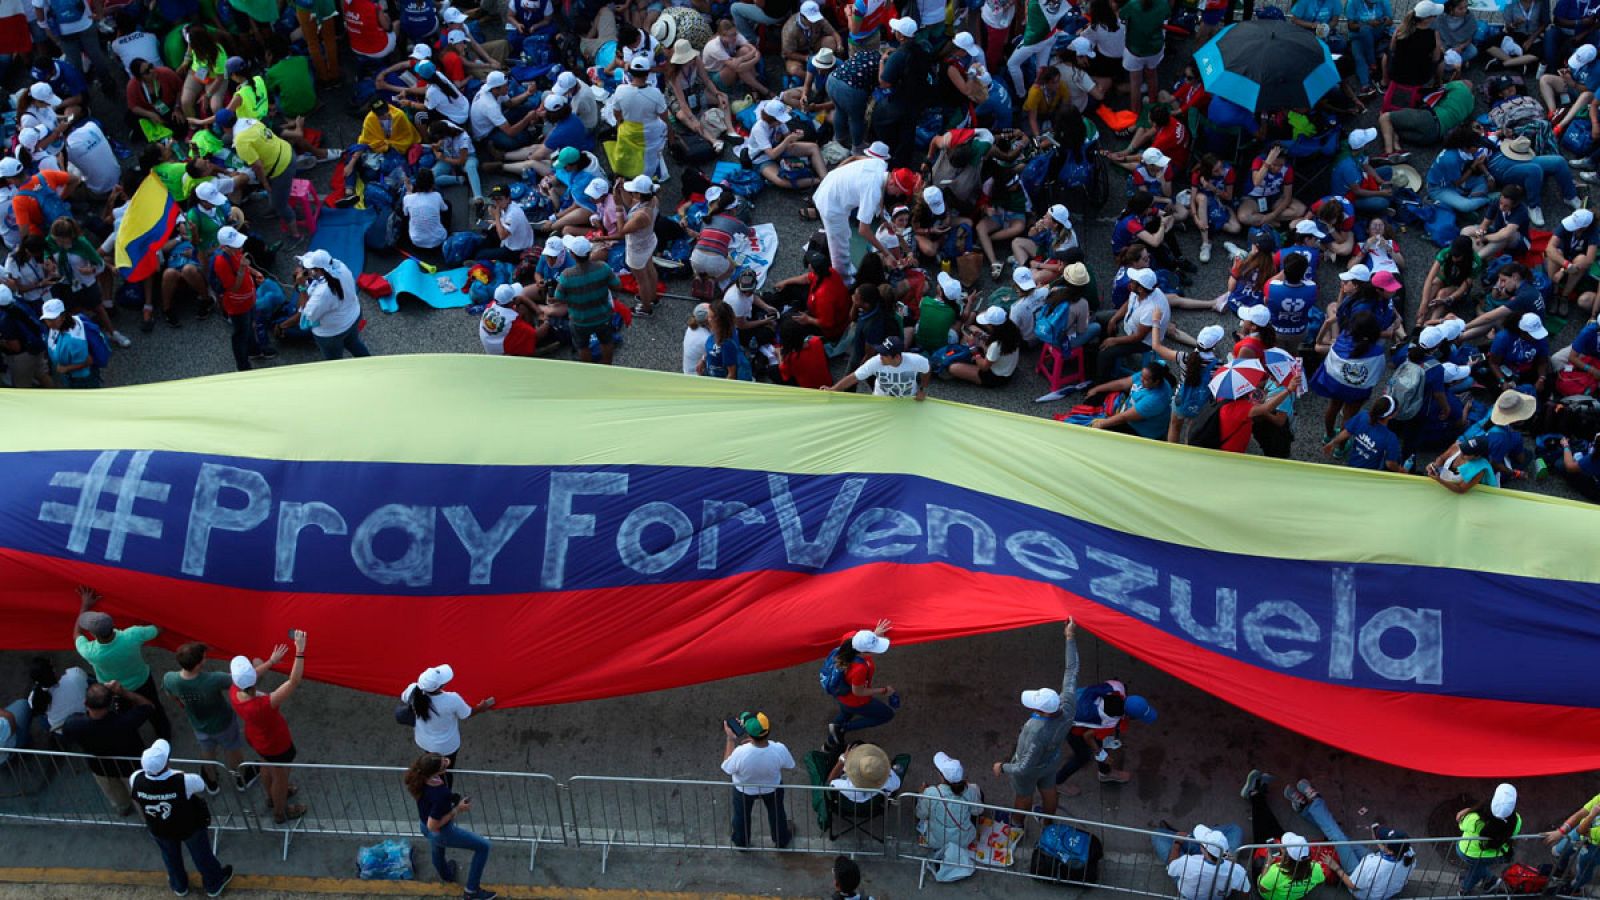 Jóvenes peregrinos de la JMJ con una gran bandera venezolana en la que se lee "Pray for Venezuela"